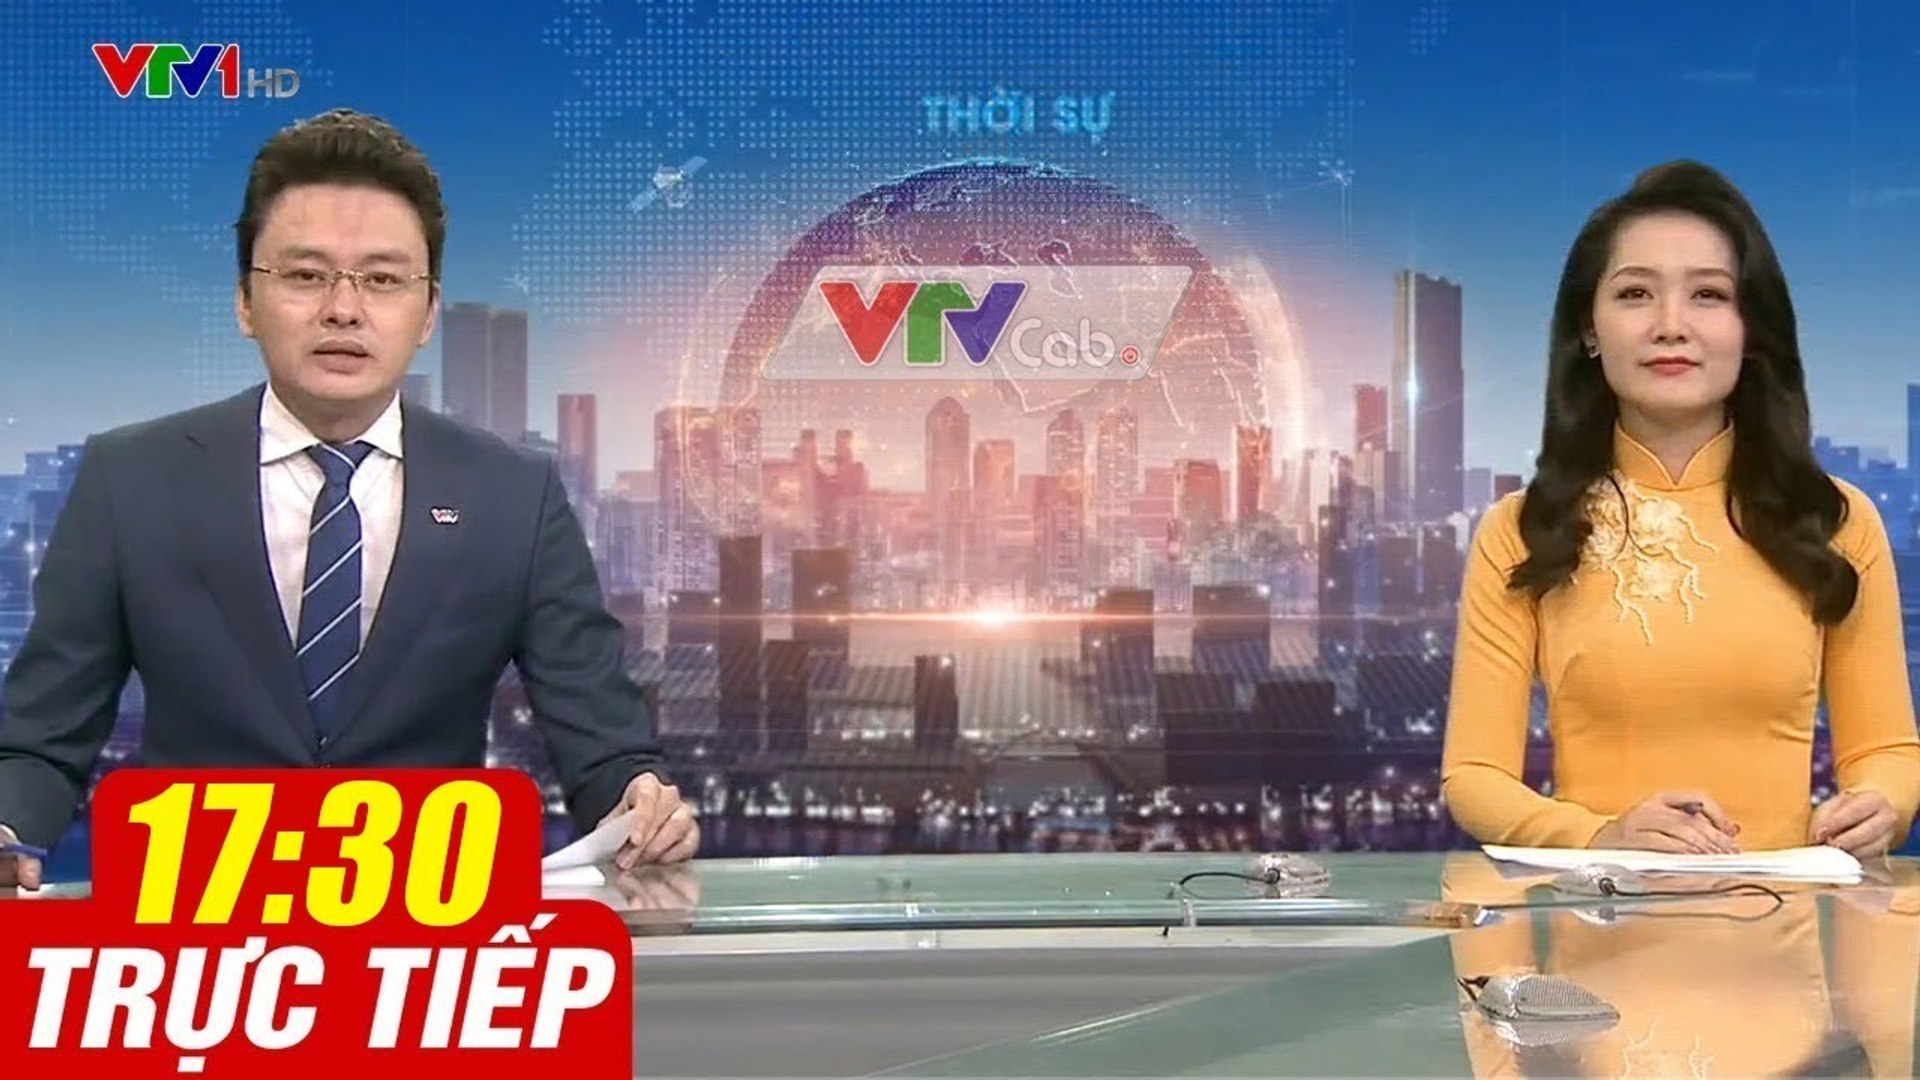 Trực Tiếp VIỆT NAM HÔM NAY 17h30 ngày 9.10.2020  Tin tức thời sự VTV1 mới nhất hôm nay